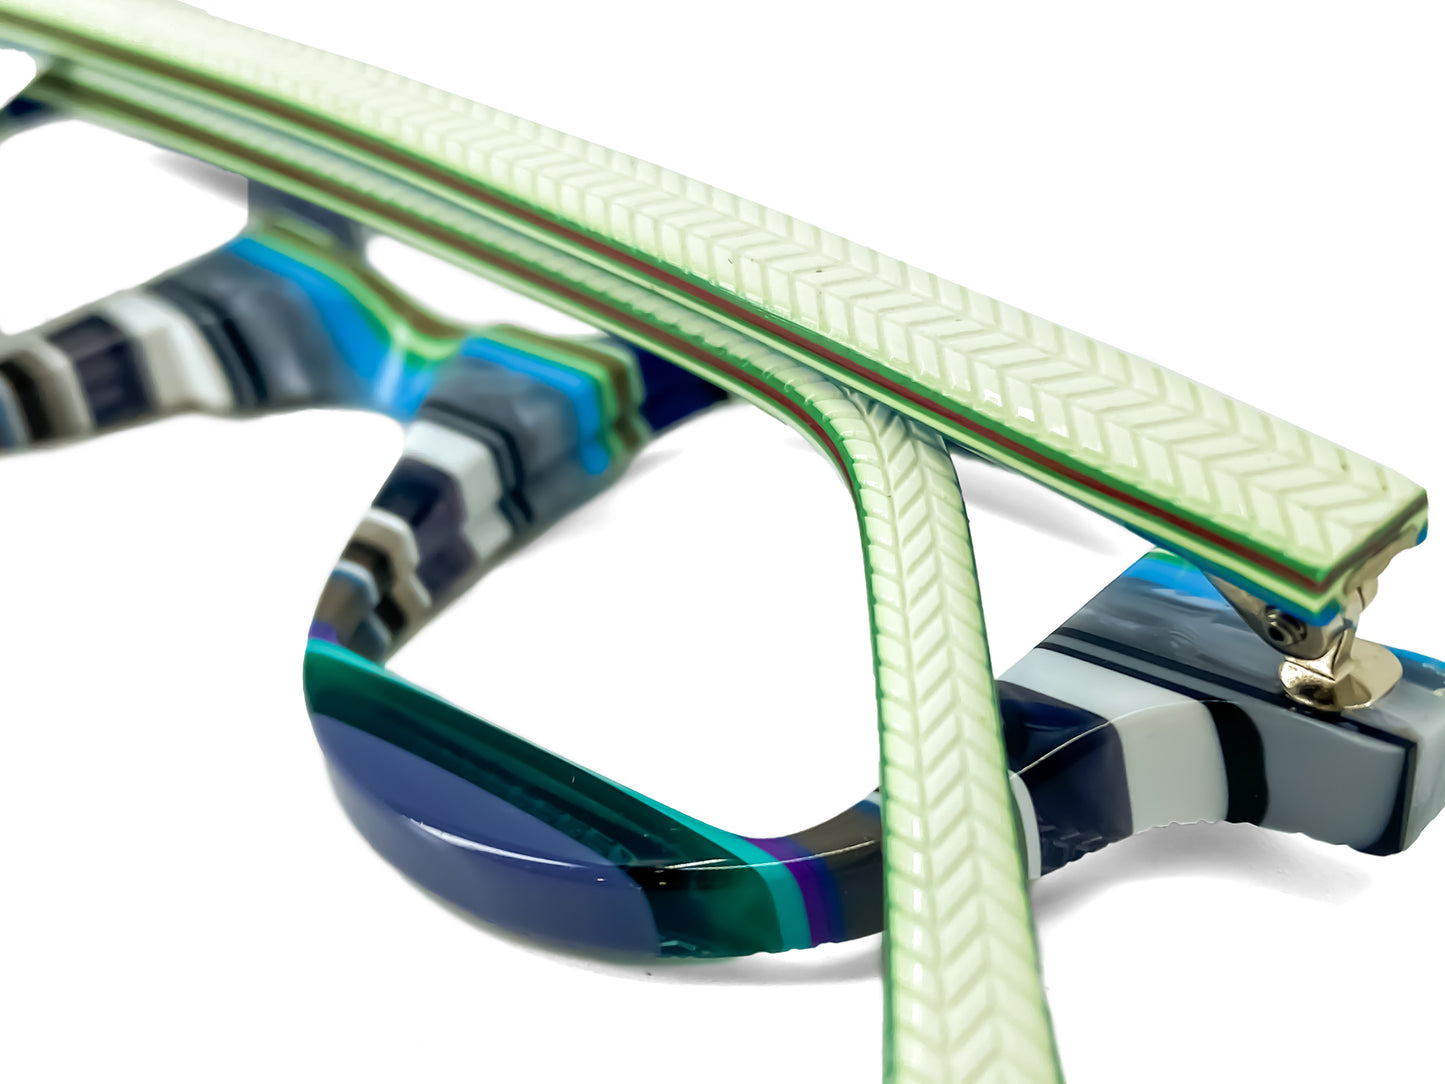 Double square 2856 by La Bleu LE Frames Glasses striped